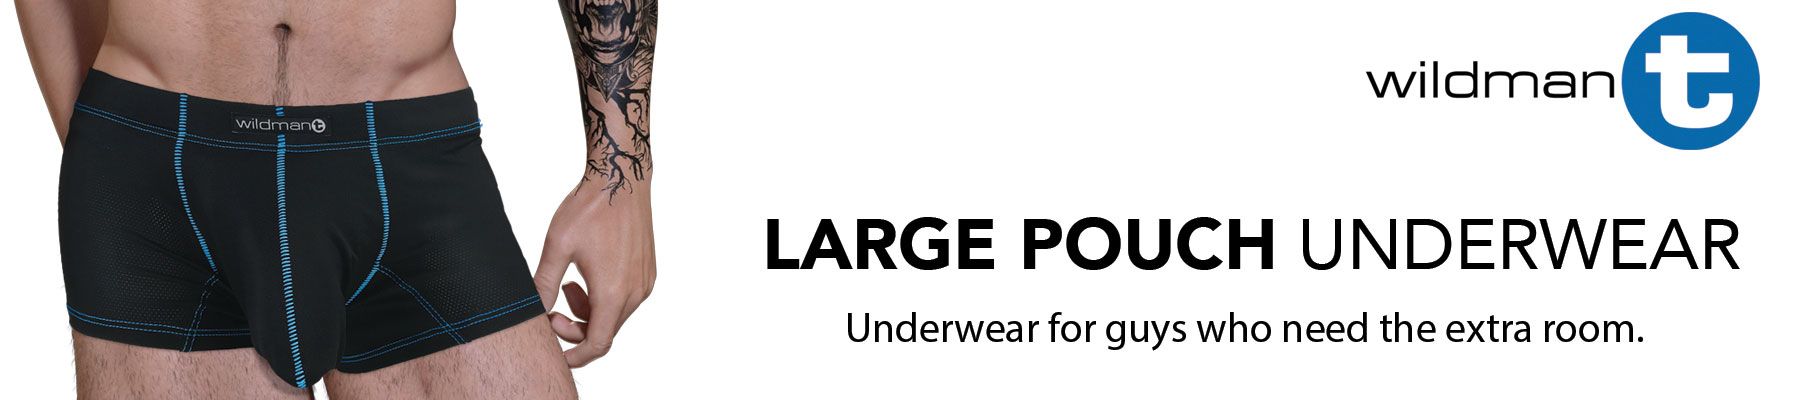 Wildmant Big Boy Pouch Brief See Through Underwear Nepal